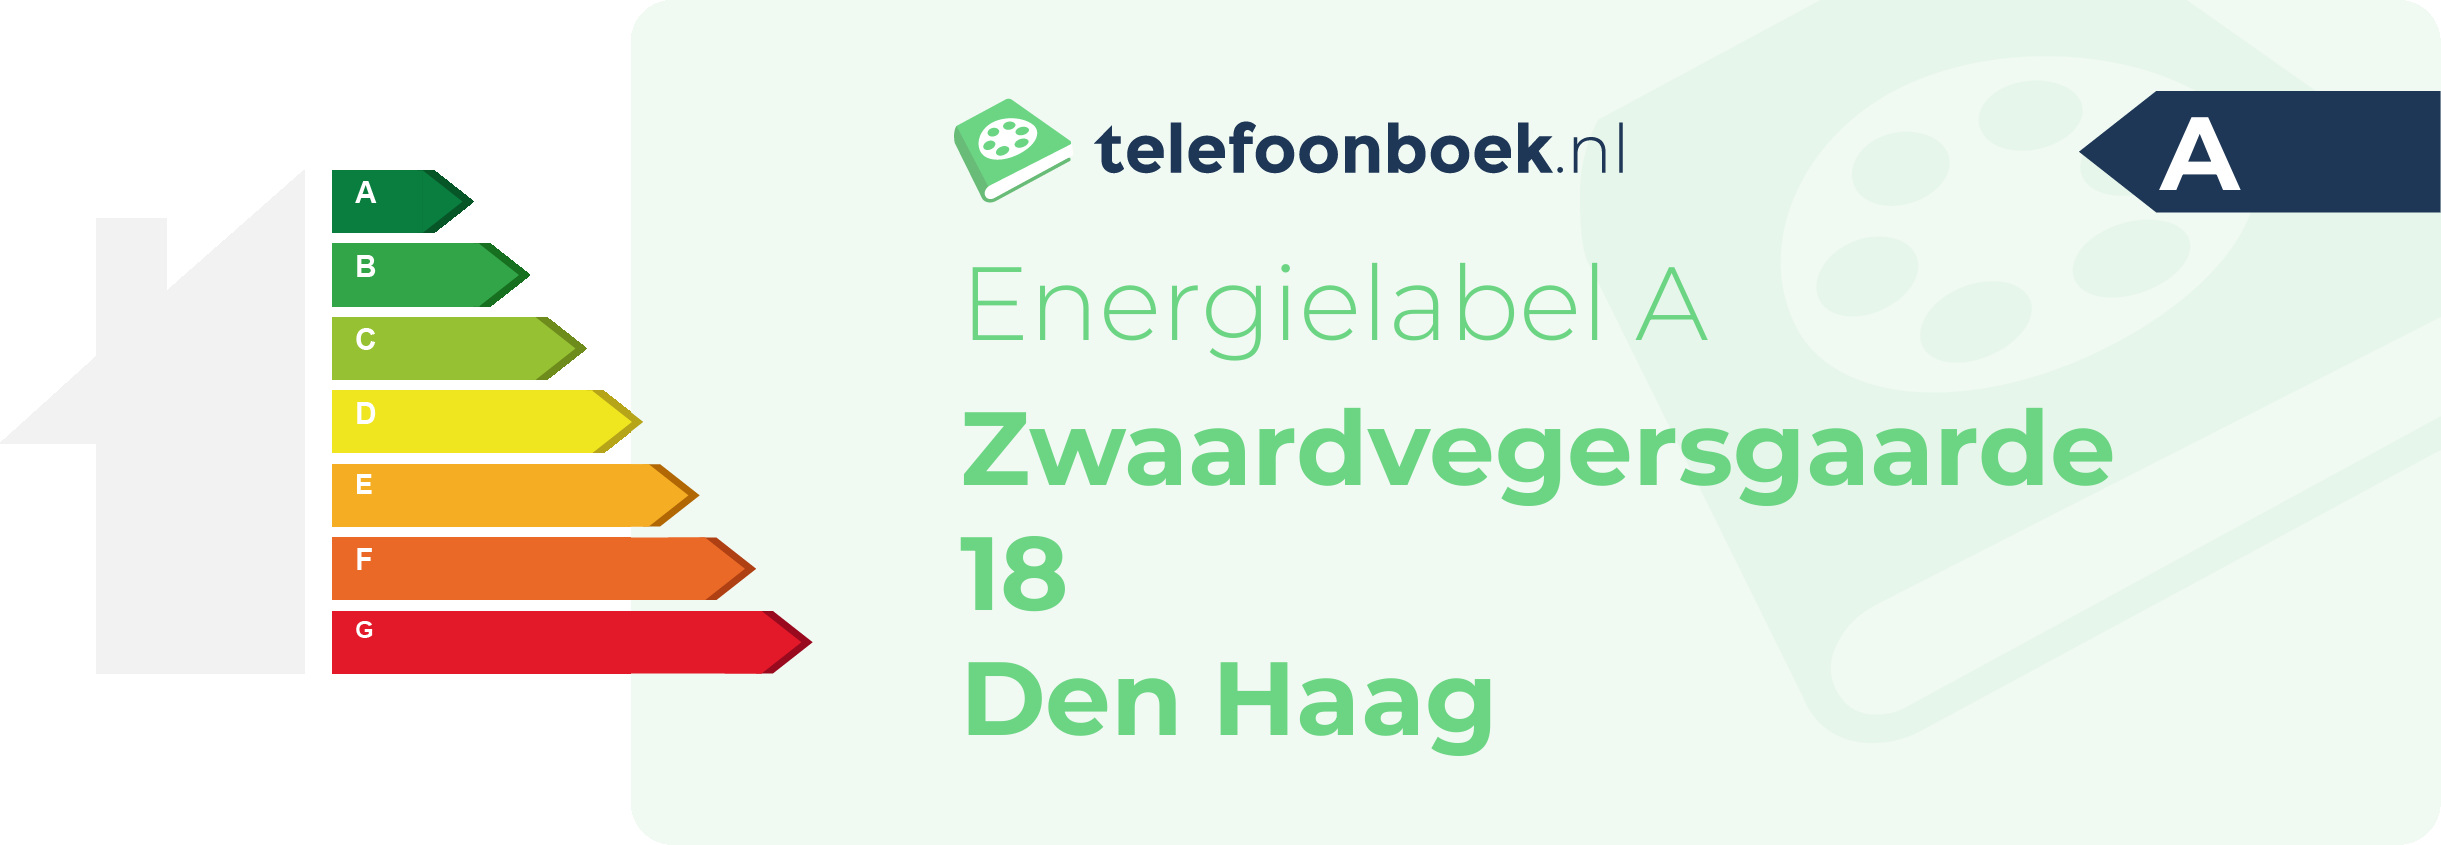 Energielabel Zwaardvegersgaarde 18 Den Haag